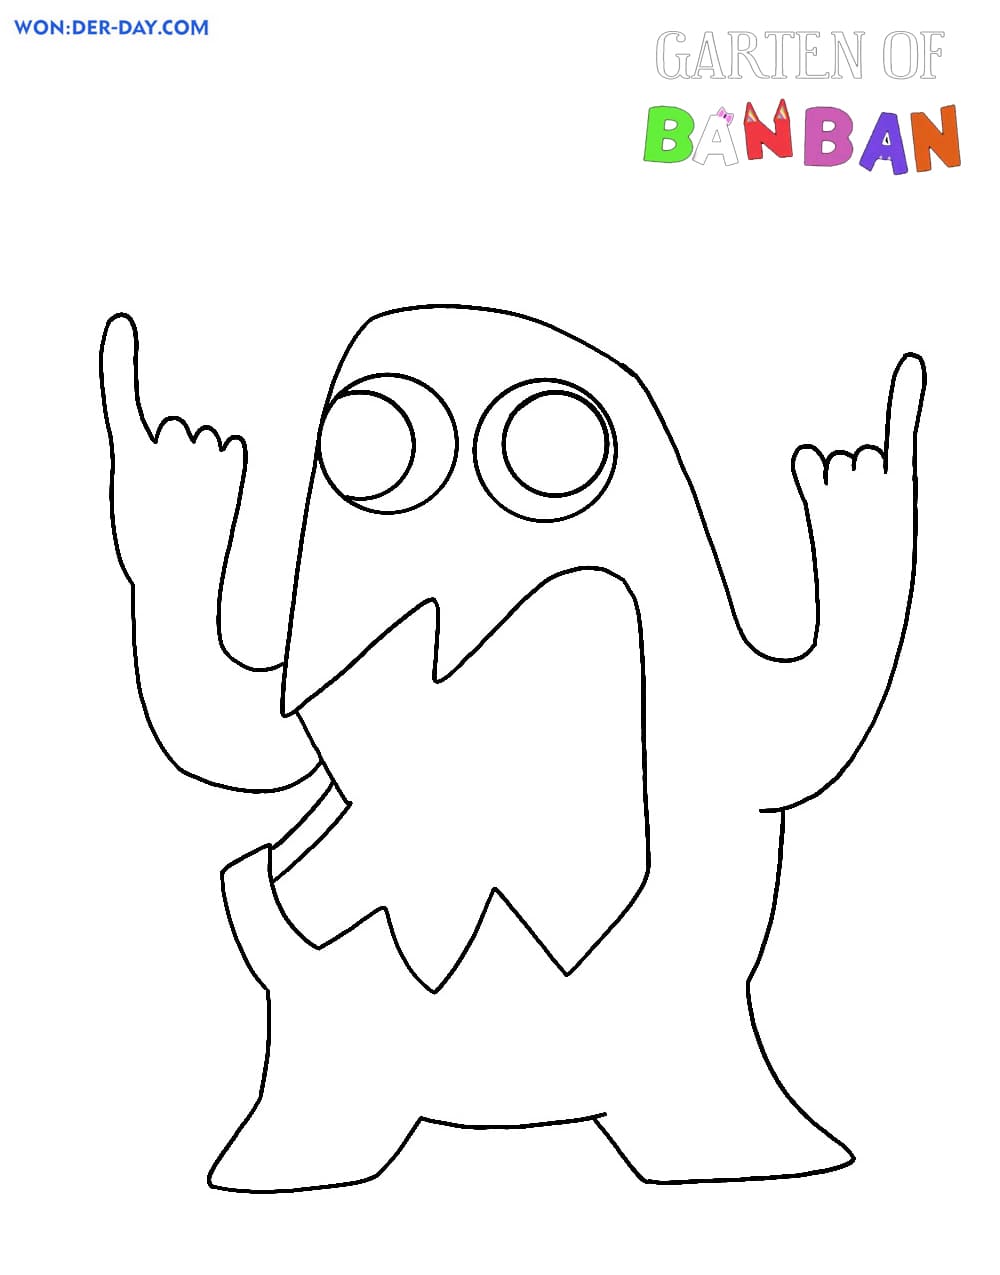 Desenhos de Garten de Banban para colorir  WONDER DAY — Desenhos para  colorir para crianças e adultos